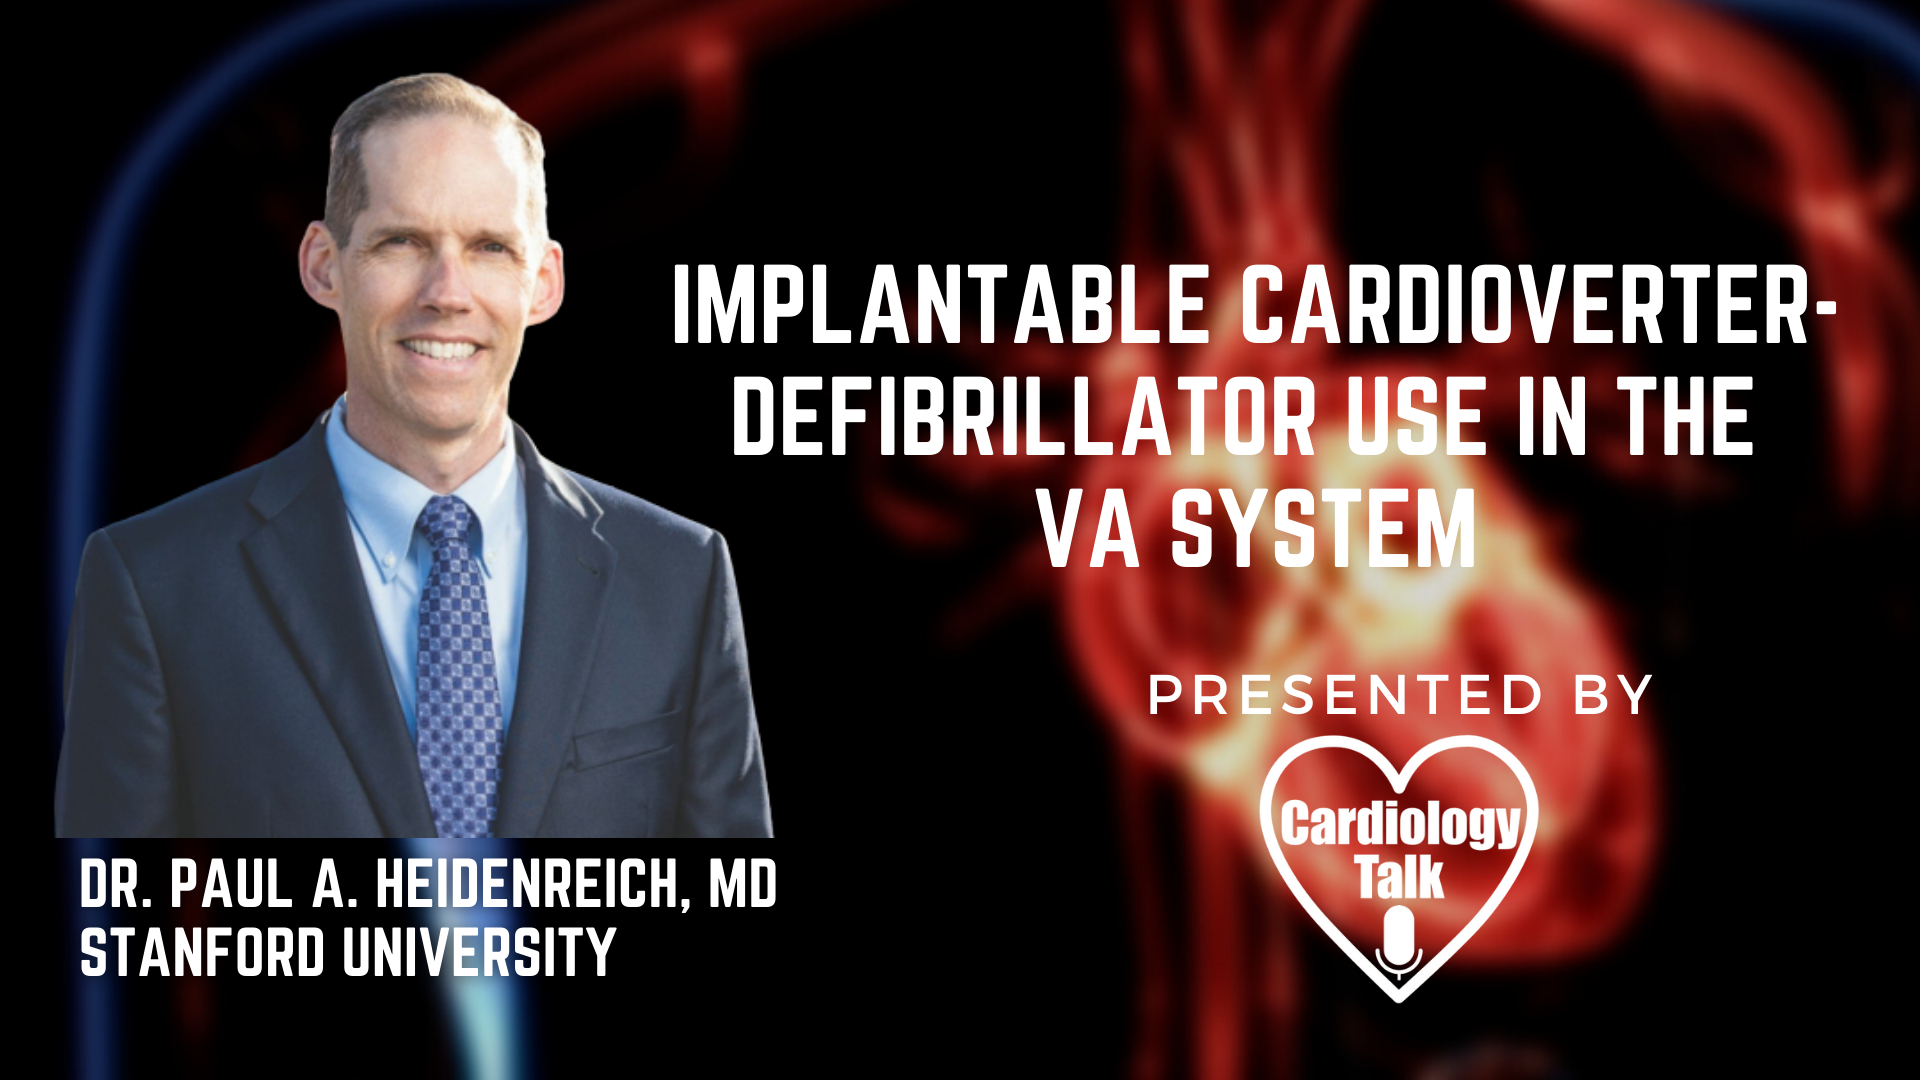 Dr. Paul Heidenreich, MD - Implantable Cardioverter-Defibrillator Use in the VA System @paheidenreich #VA #DardioDefibrillator